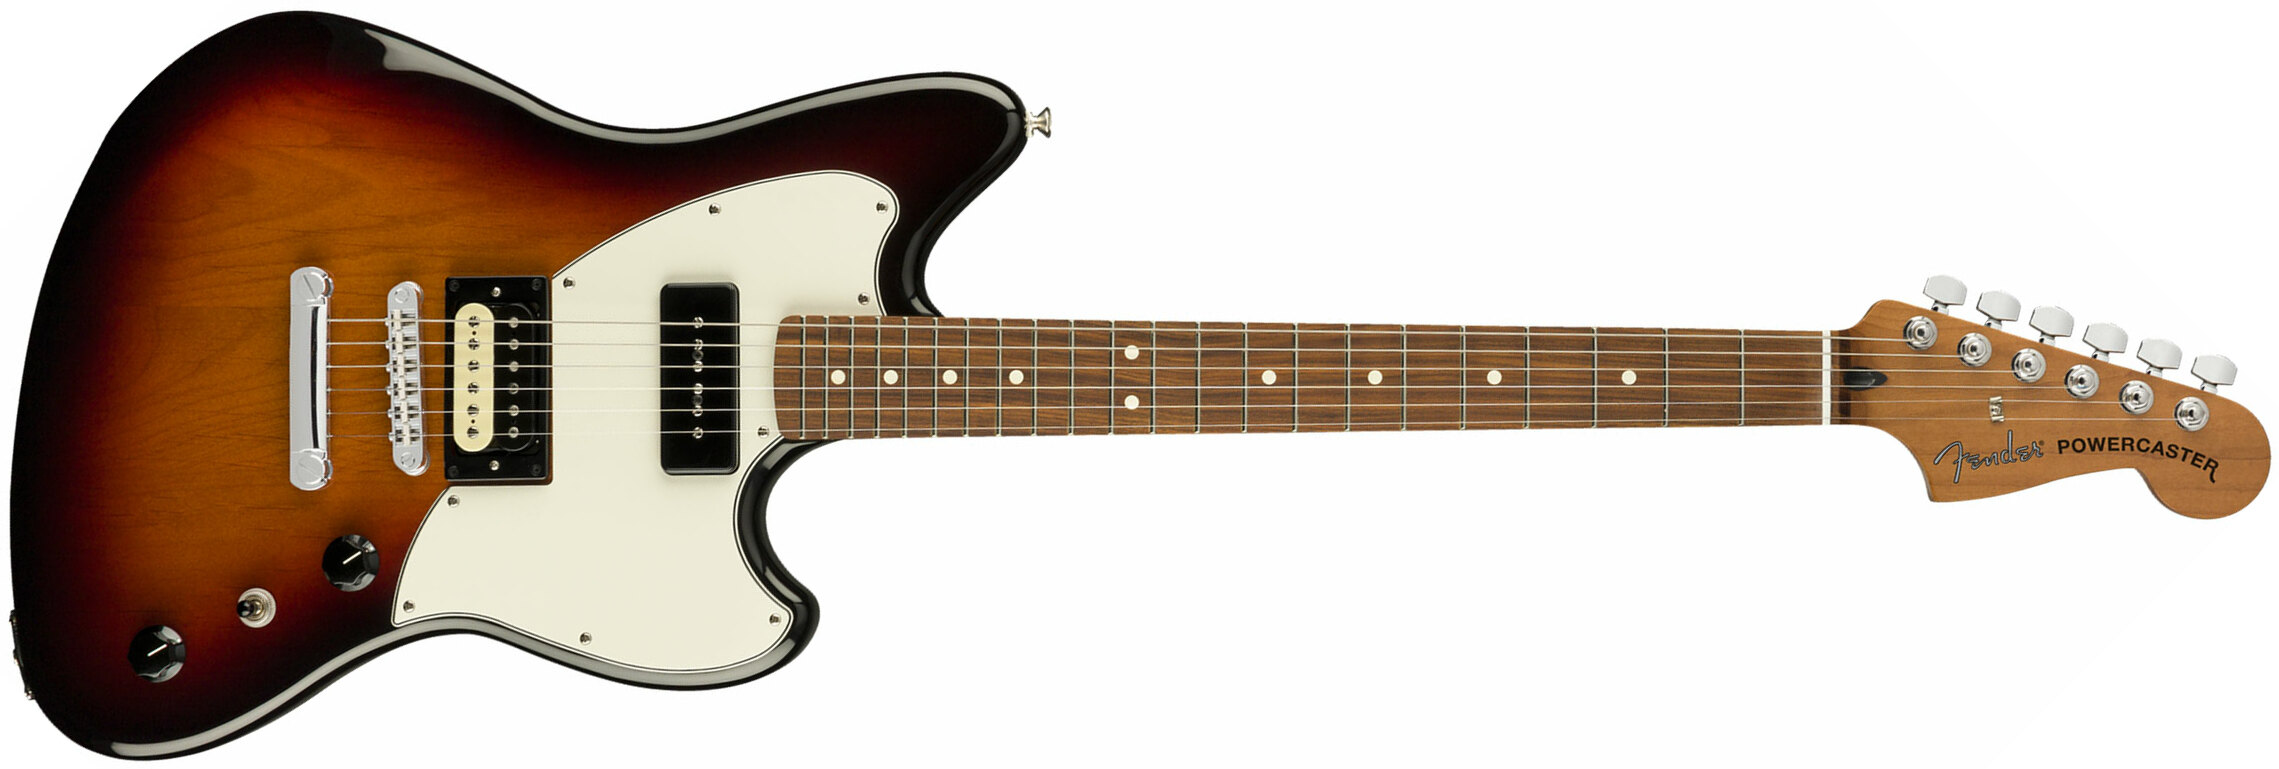 Fender Powercaster Alternate Reality Ltd Hp90 Ht Pf - 3-color Sunburst - Guitare Électrique RÉtro Rock - Main picture